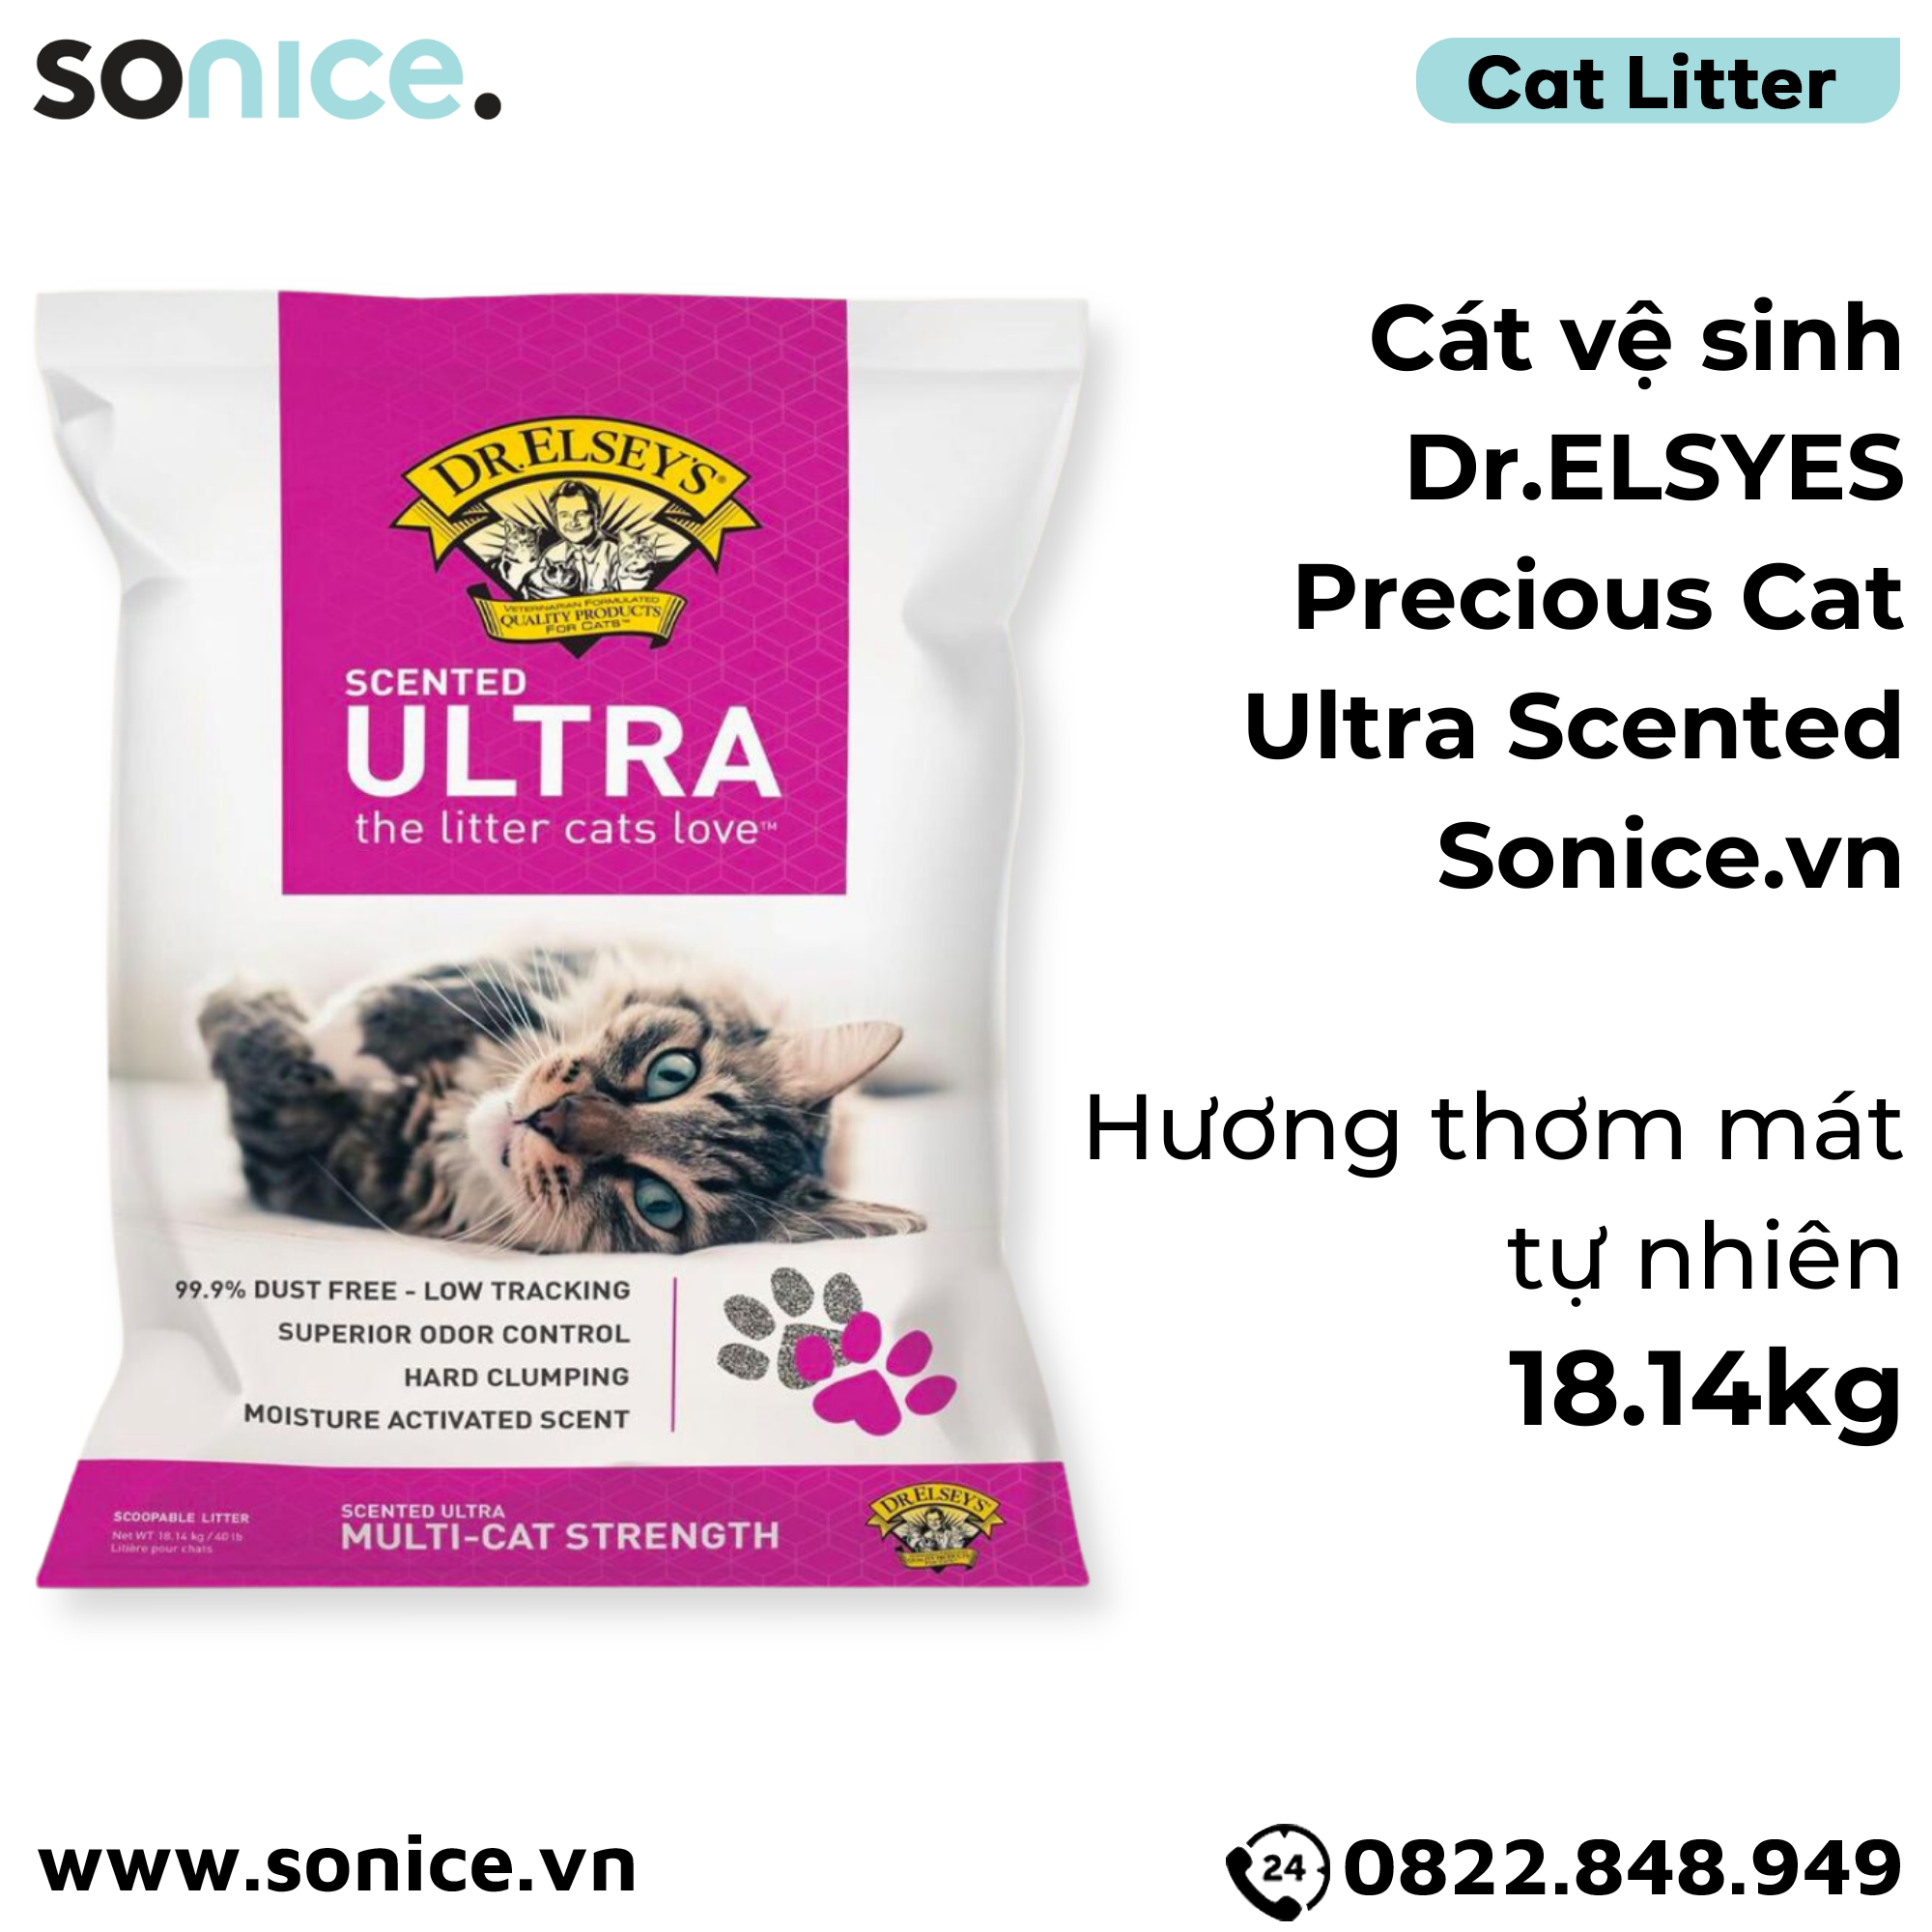  Cát vệ sinh Dr.ELSYES Precious Cat Ultra Scented 18.14kg - Hương thơm mát tự nhiên SONICE. 